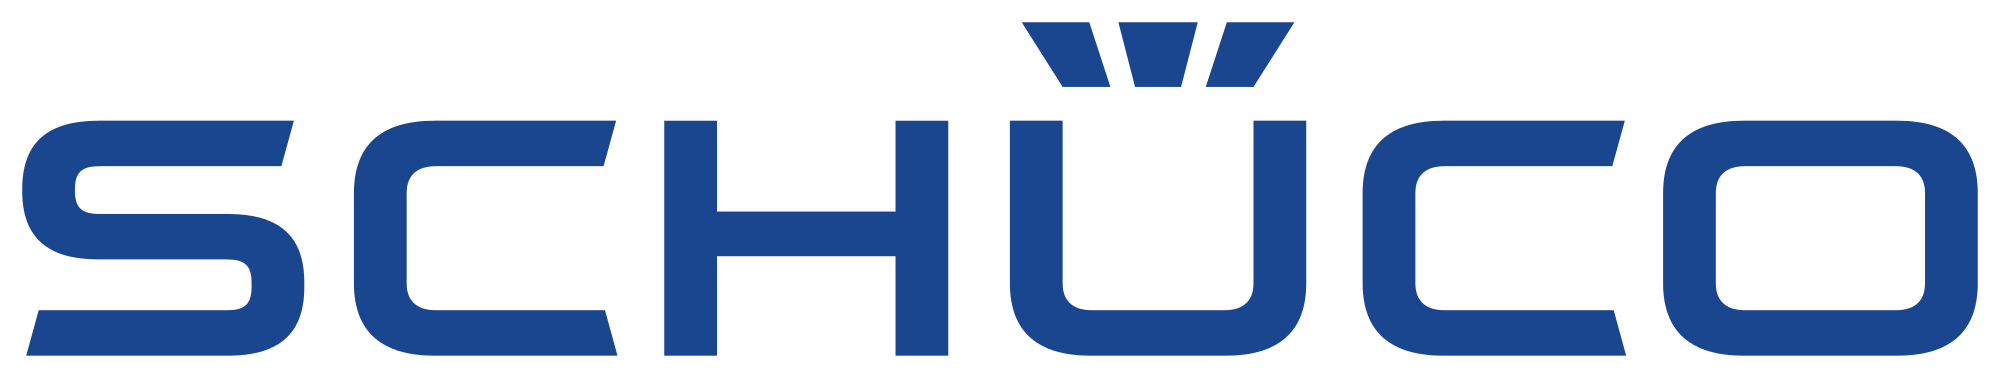 2000px-Schueco_logo.svg